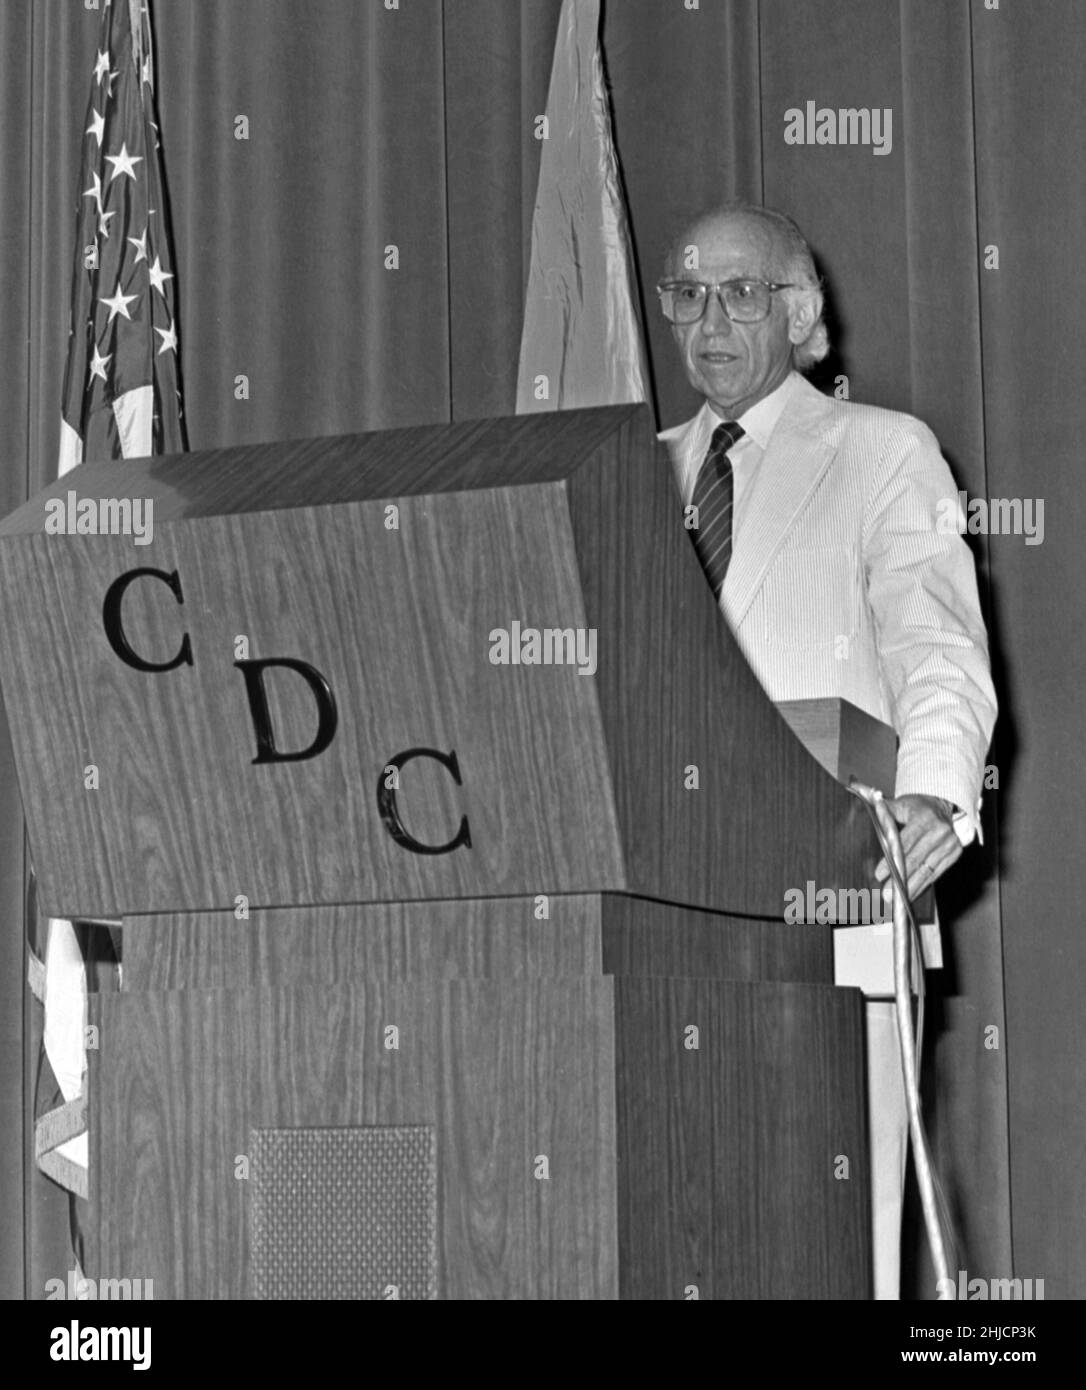 Questa fotografia mostra il Dr. Jonas Salk (a sinistra), creatore del primo vaccino antipolio nel 1955, domande durante la sua visita al CDC nel 1988. Il 12 aprile 2005, segna il 50th° anniversario dell'annuncio che il vaccino antipolio, sviluppato da Jonas Salk e dal suo team di scienziati presso l'Università di Pittsburgh, ha lavorato. "Sicuro, efficace e potente" erano le parole usate per annunciare al mondo che era stato trovato un vaccino efficace contro una malattia che una volta paralizzava 13.000--20.000 persone ogni anno negli Stati Uniti. 1988 / xxxxxxxxx memoria immagine: Xxxxxxxxxxxxx CD 112 DH/ 040 htt Foto Stock